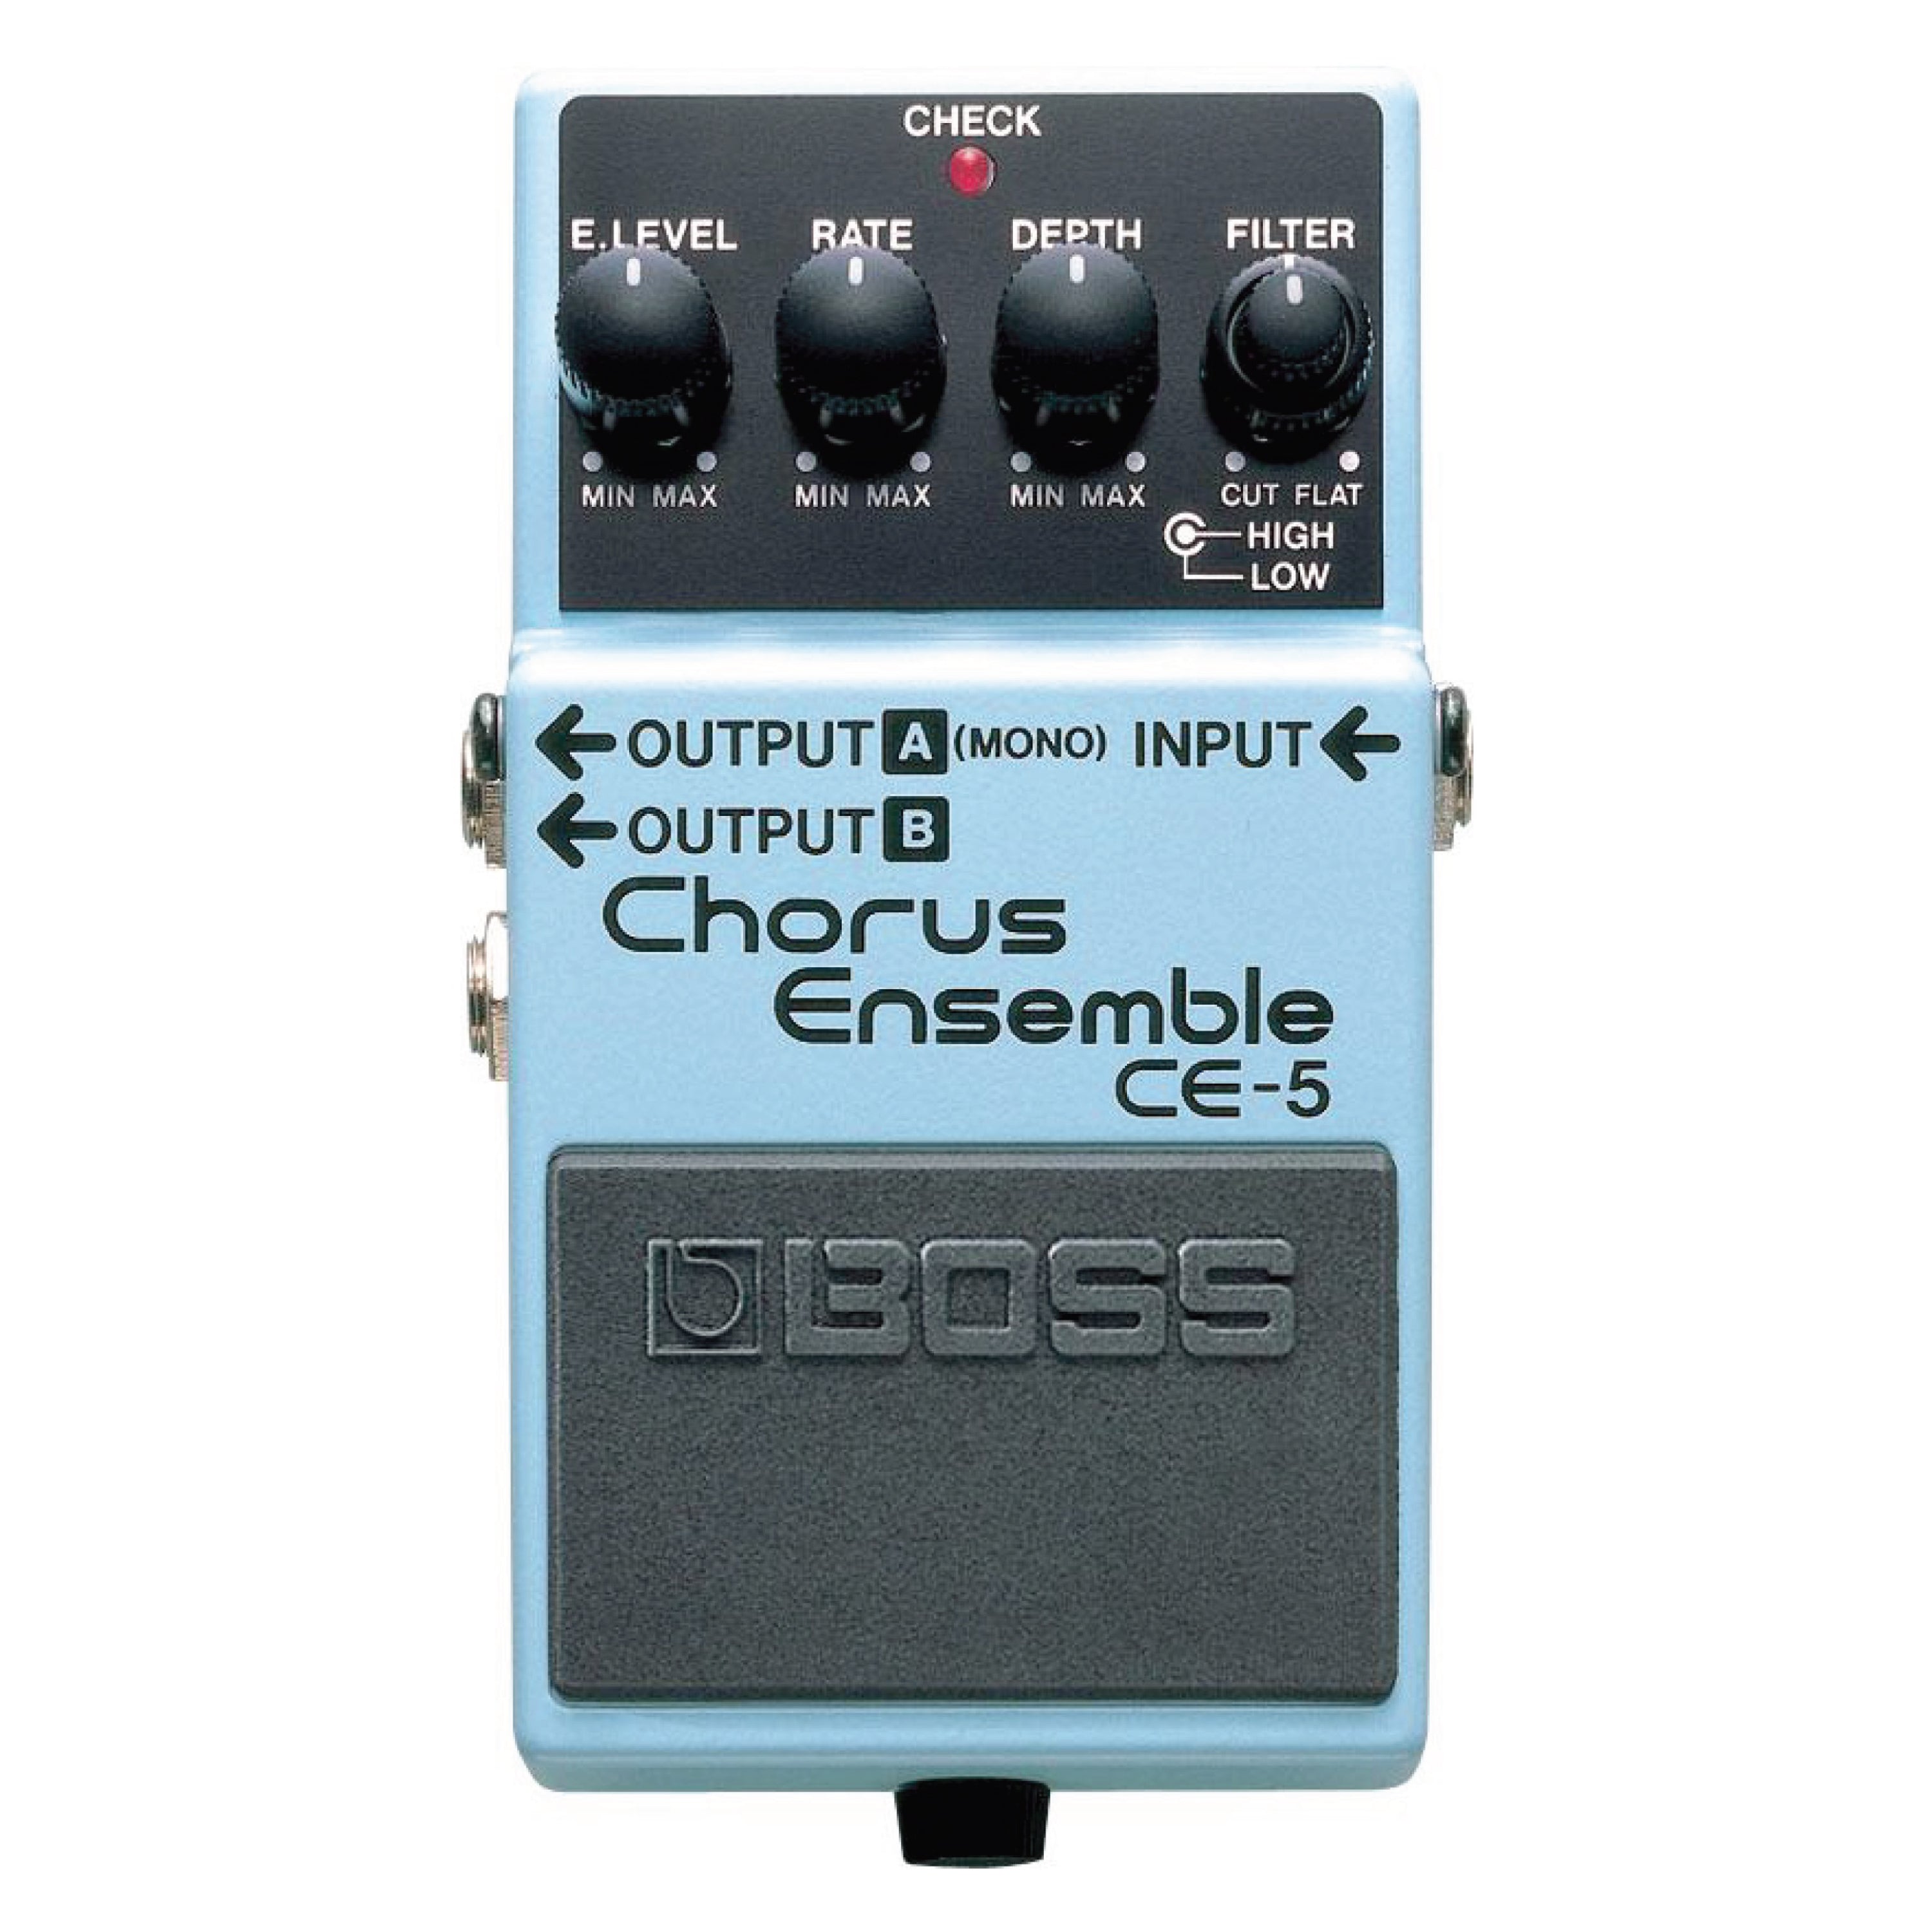 BOSS CE-5 Chorus Esemble